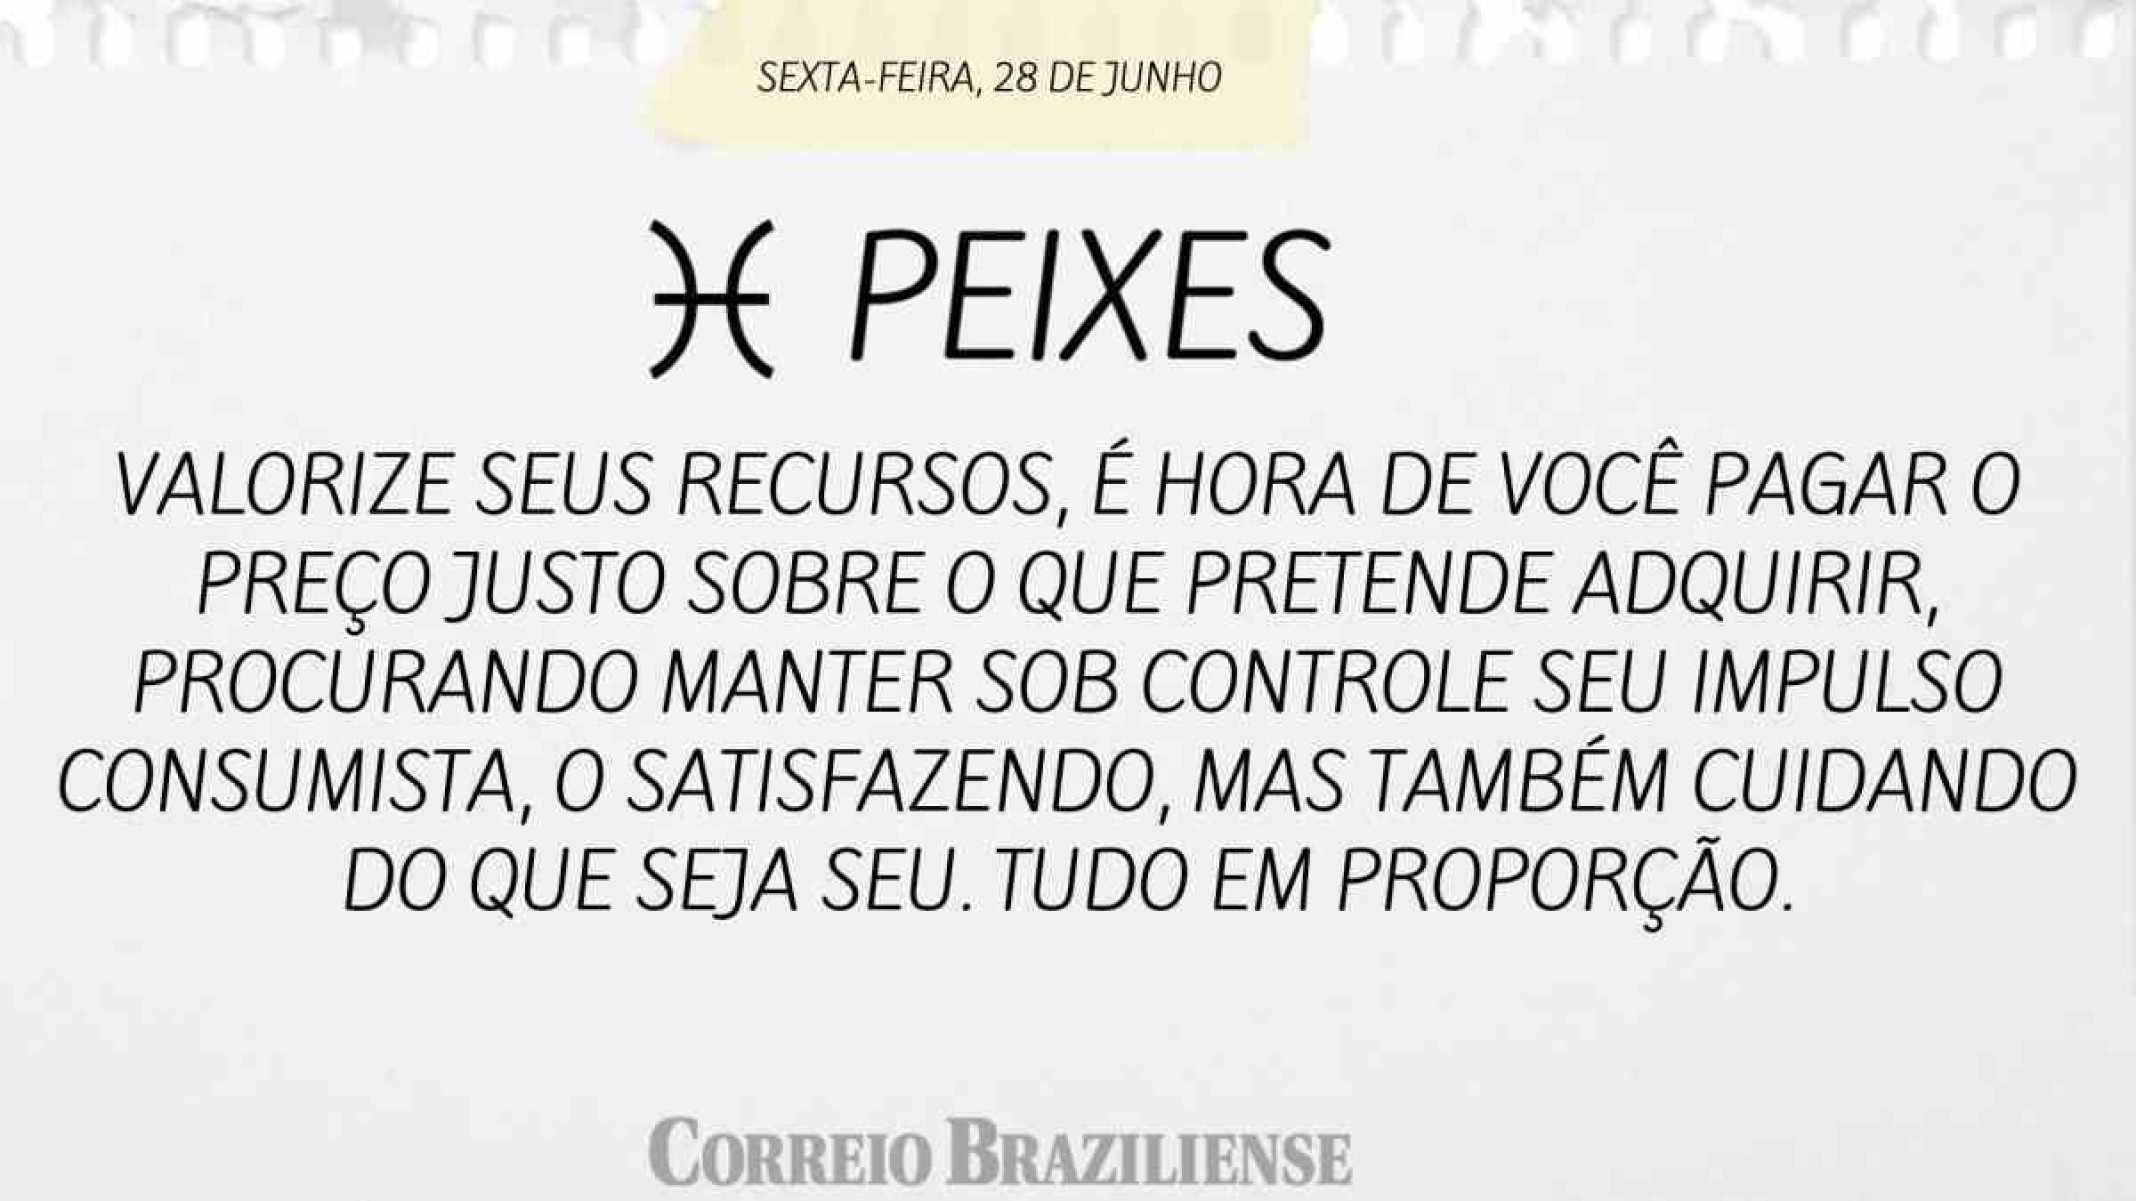 PEIXES | 28 DE JUNHO